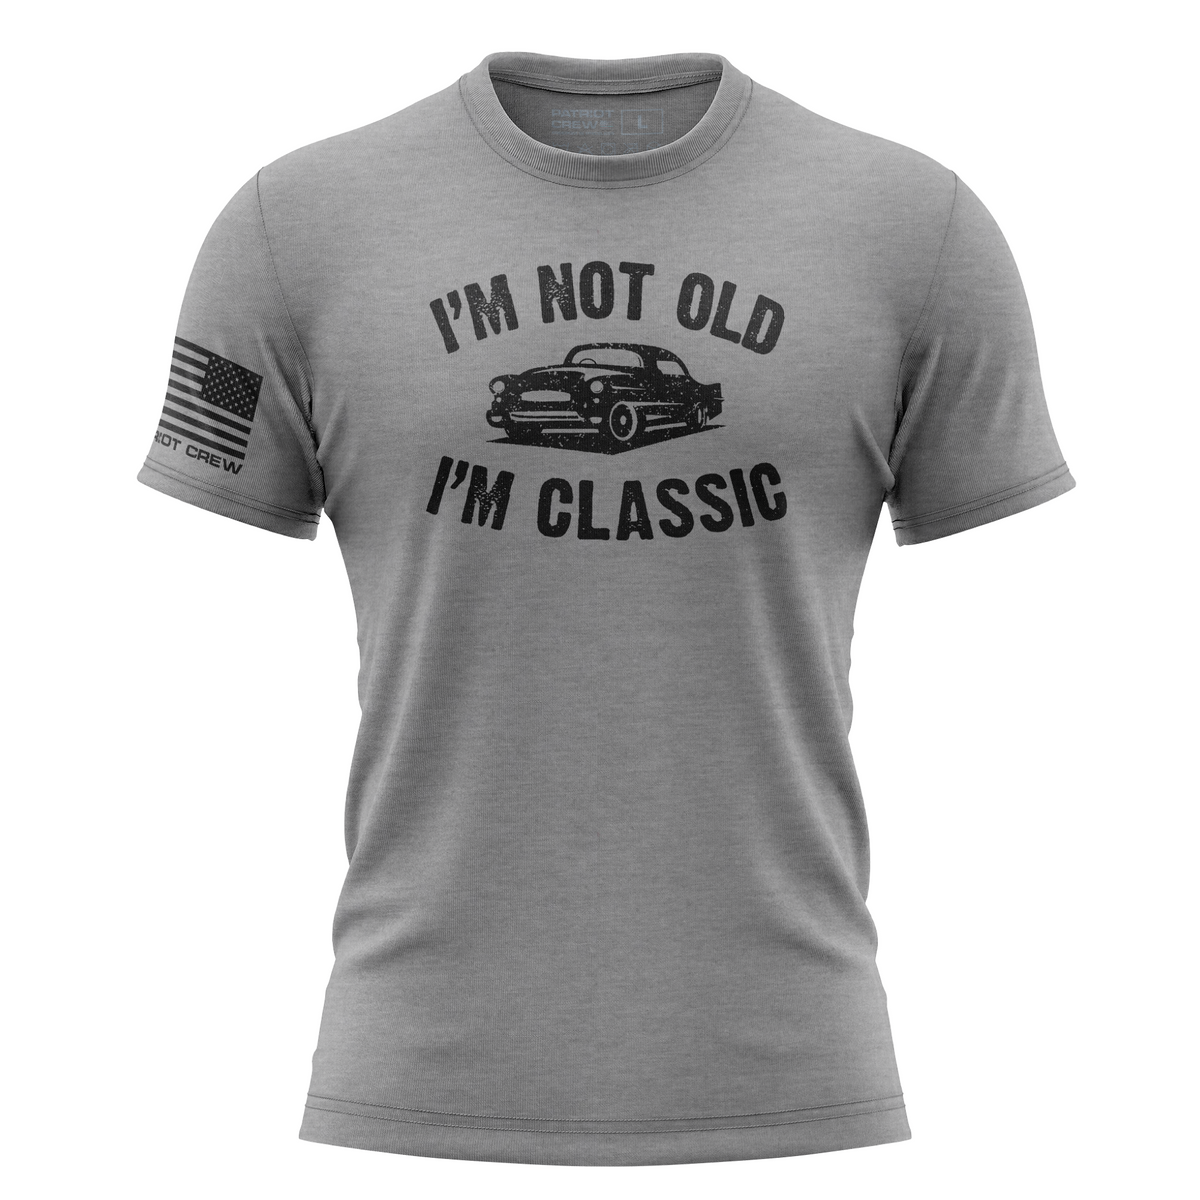 I'm Not Old; I'm Classic T-Shirt